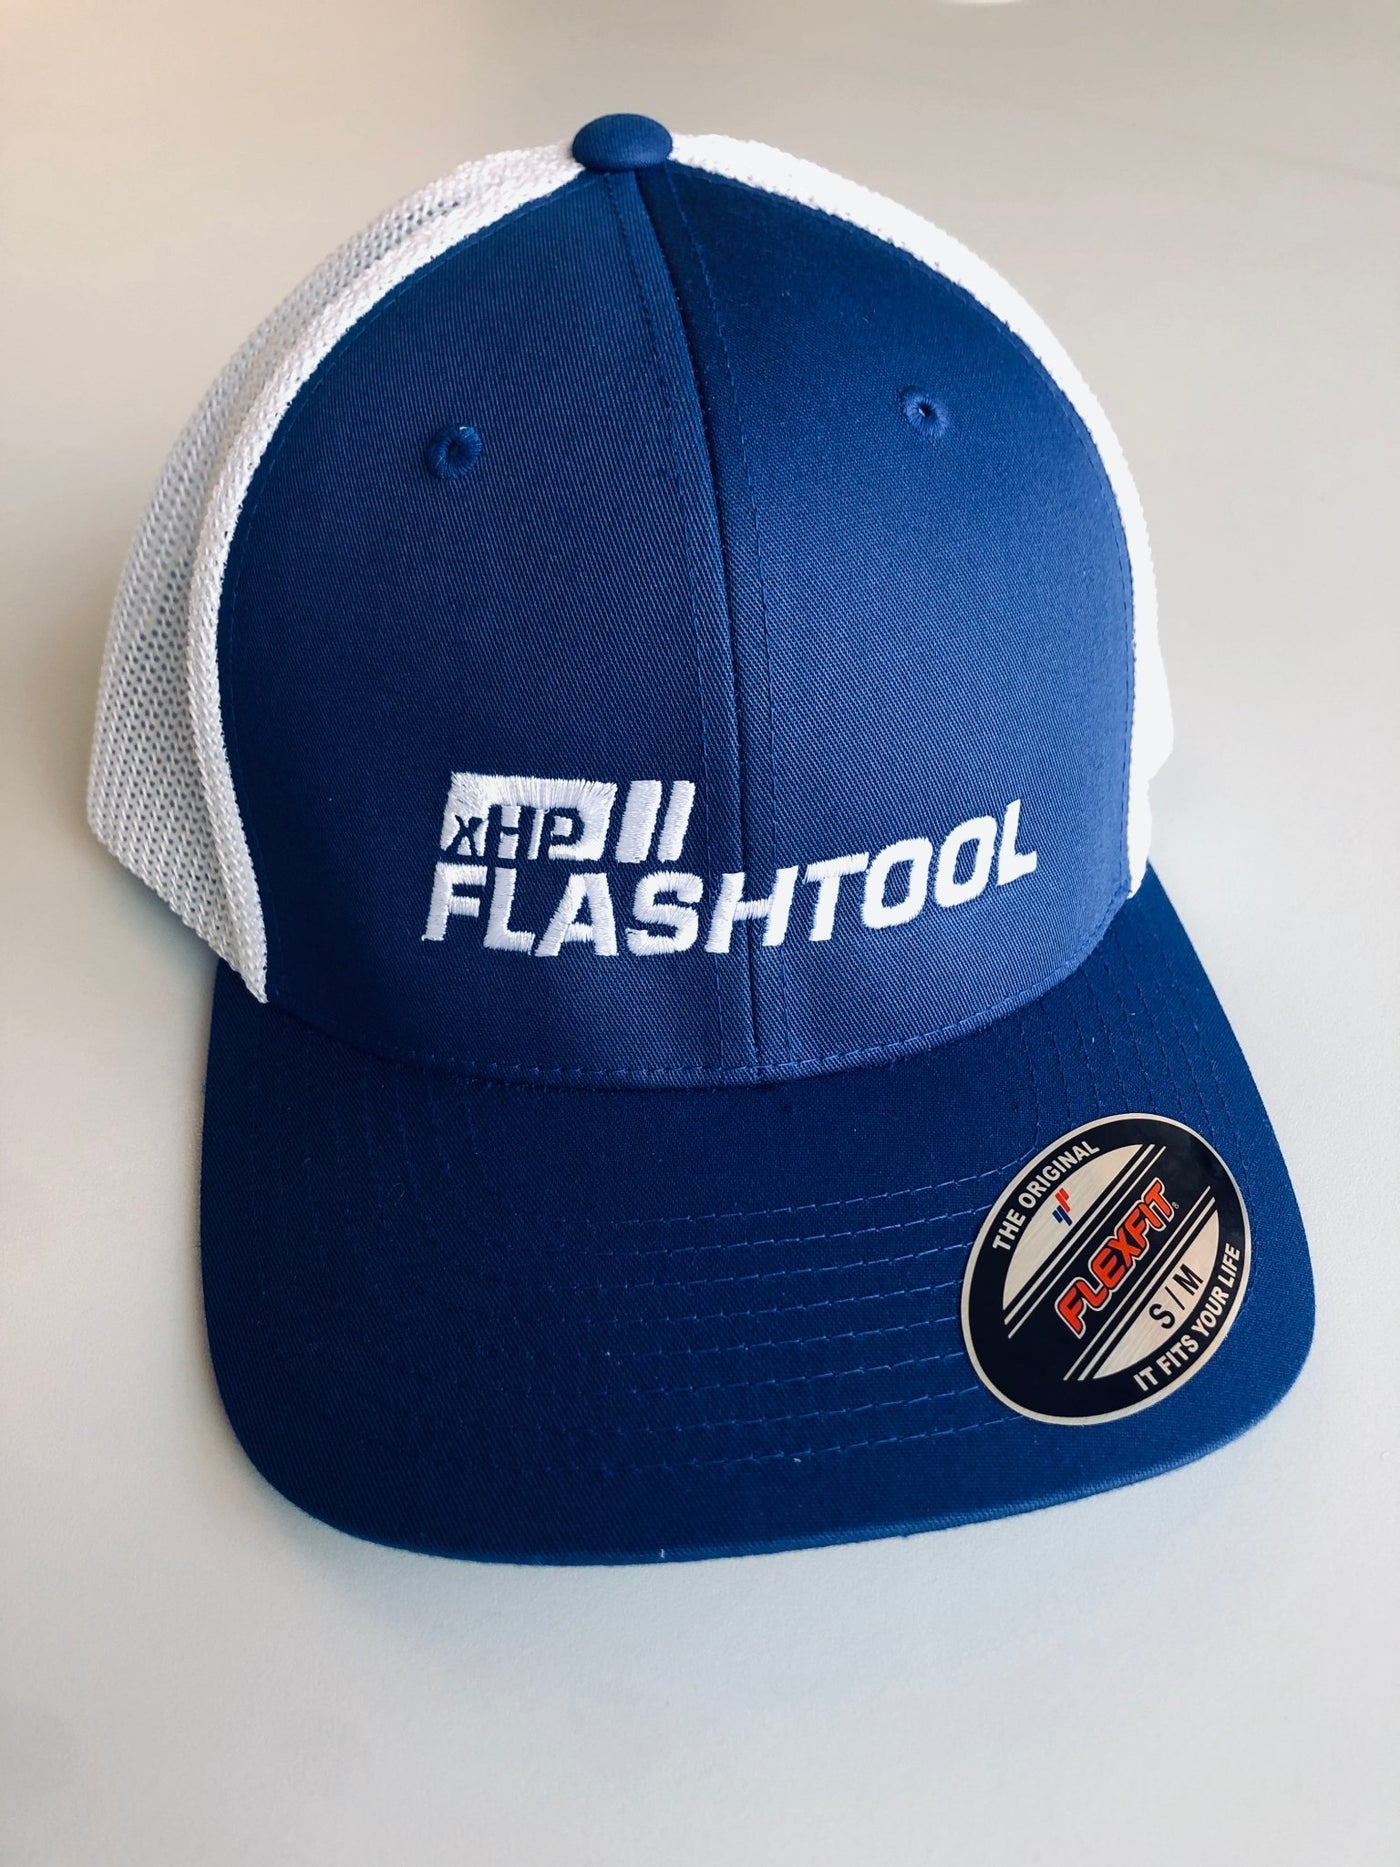 xHP Flashtool Trucker Mesh Cap (Flexfit) - Bimmer-Connect.com